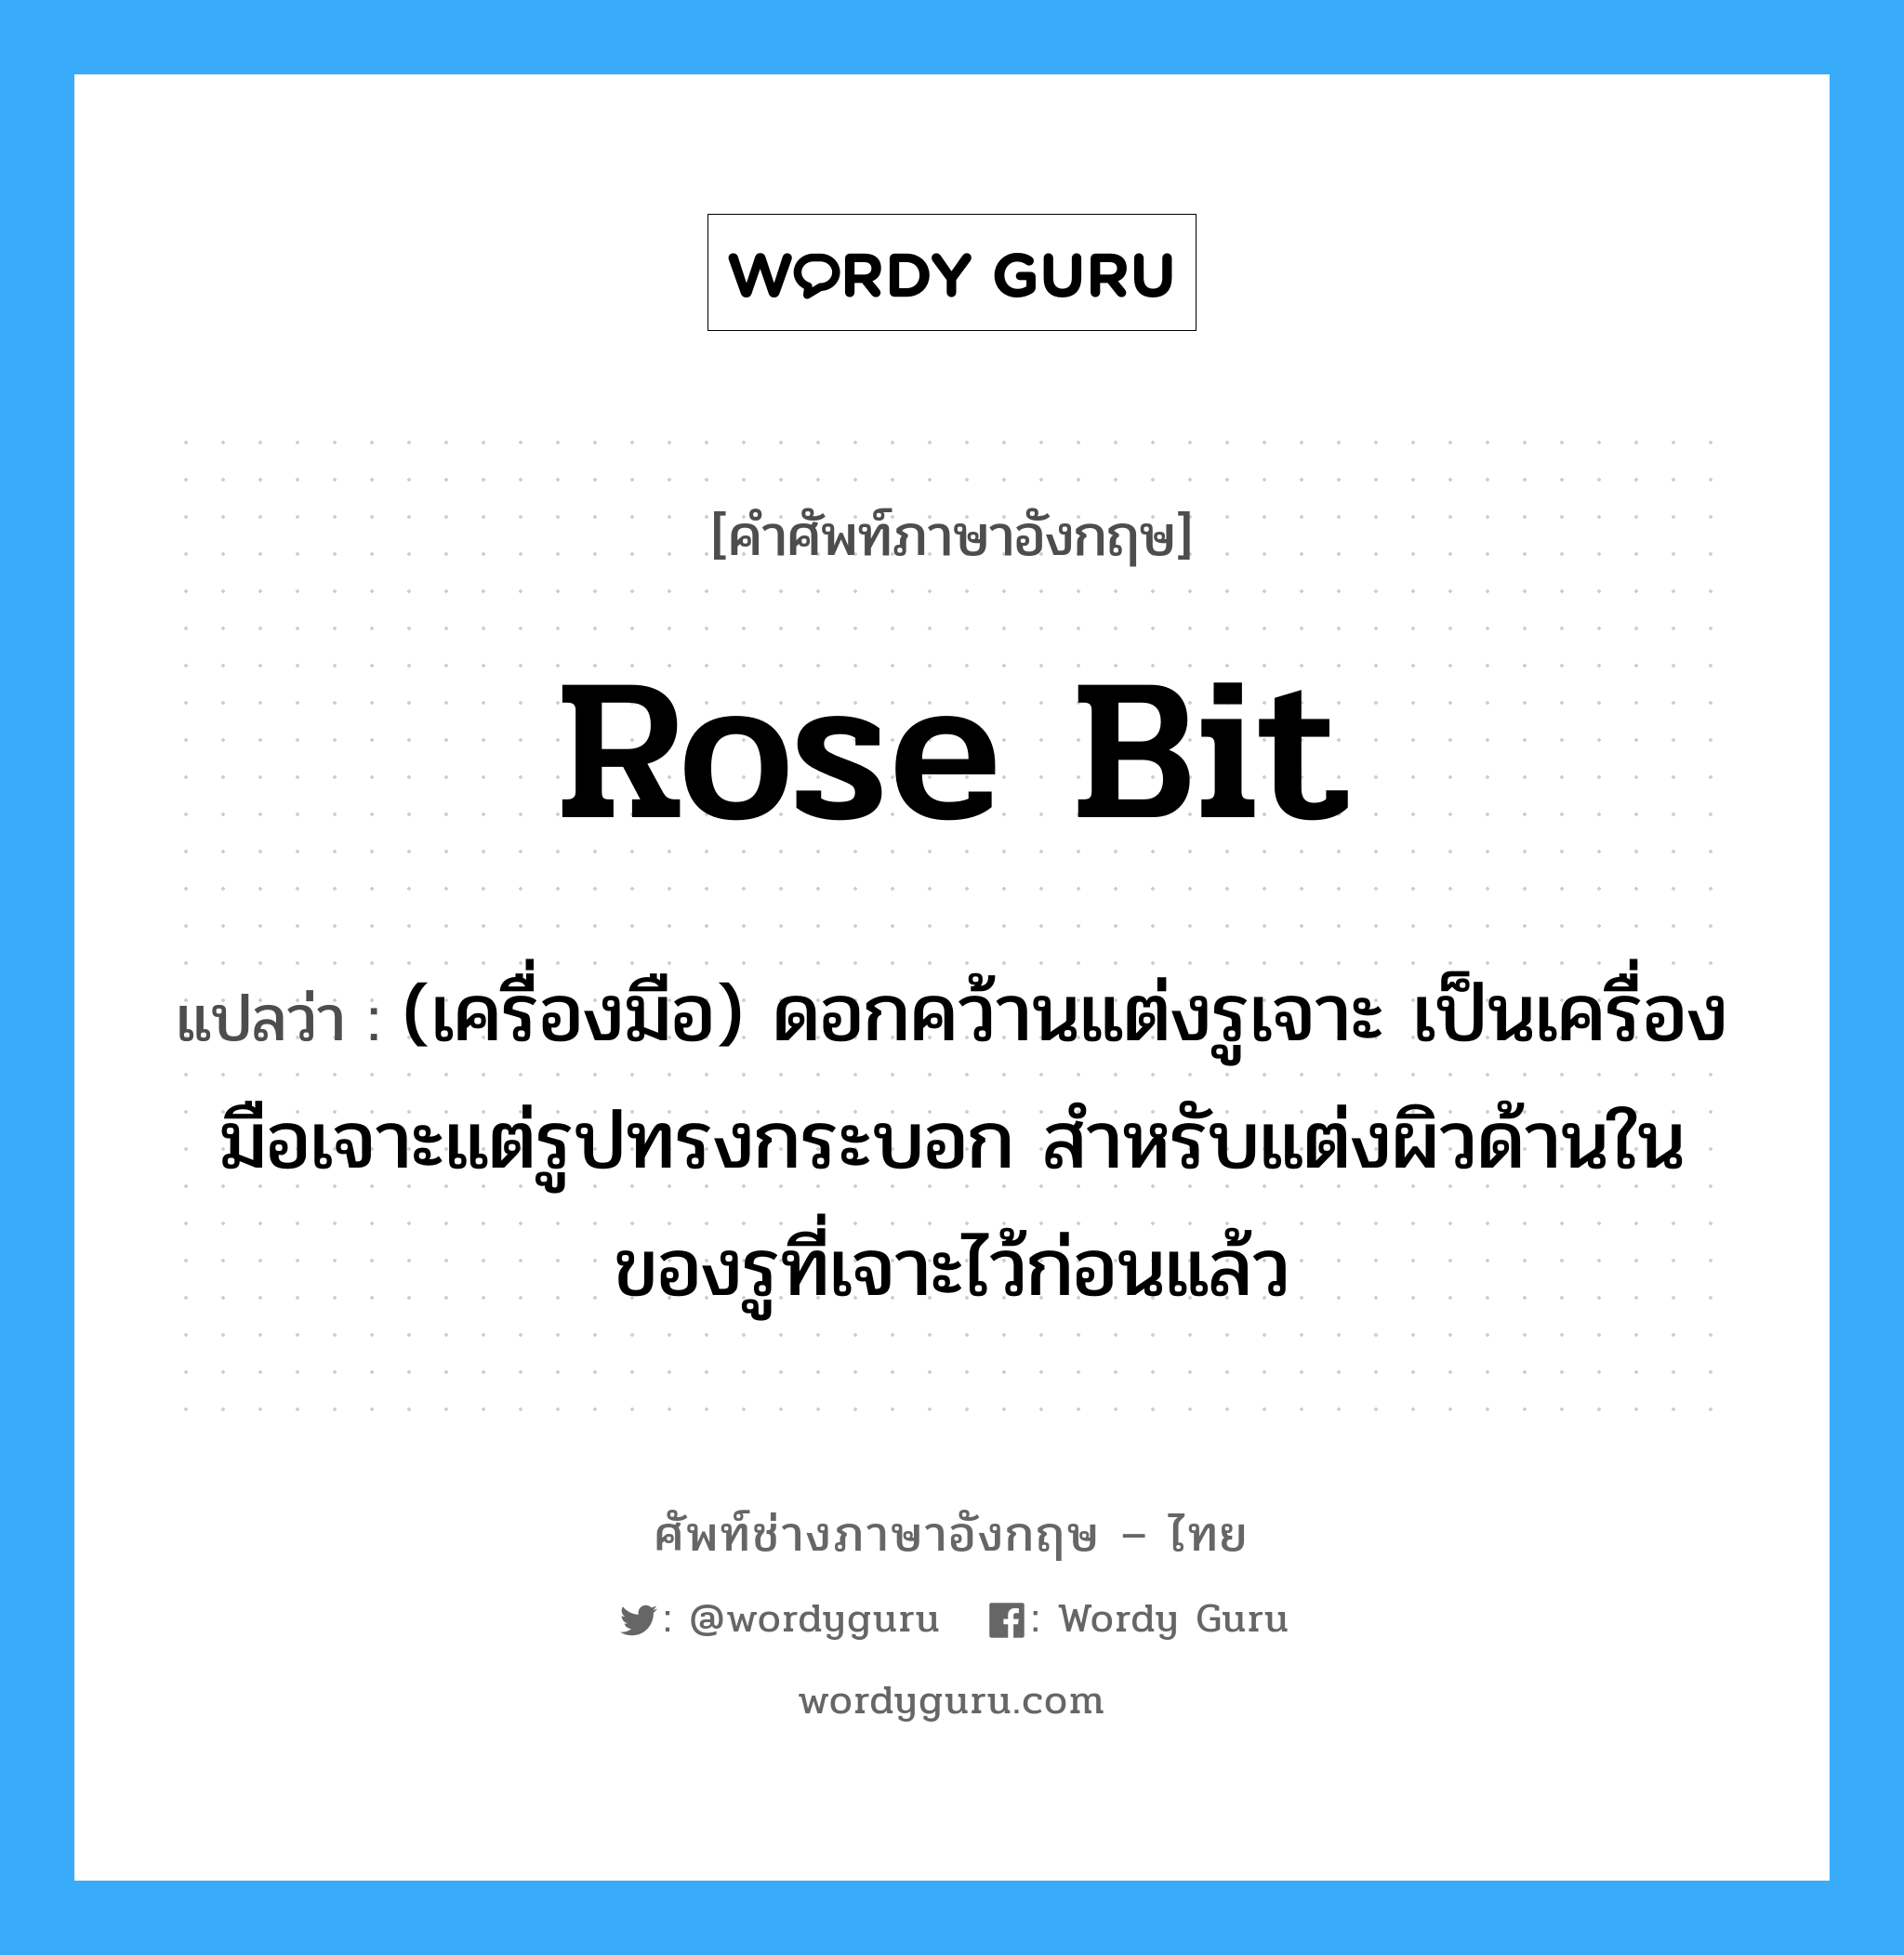 rose bit แปลว่า?, คำศัพท์ช่างภาษาอังกฤษ - ไทย rose bit คำศัพท์ภาษาอังกฤษ rose bit แปลว่า (เครื่องมือ) ดอกคว้านแต่งรูเจาะ เป็นเครื่องมือเจาะแต่รูปทรงกระบอก สำหรับแต่งผิวด้านในของรูที่เจาะไว้ก่อนแล้ว